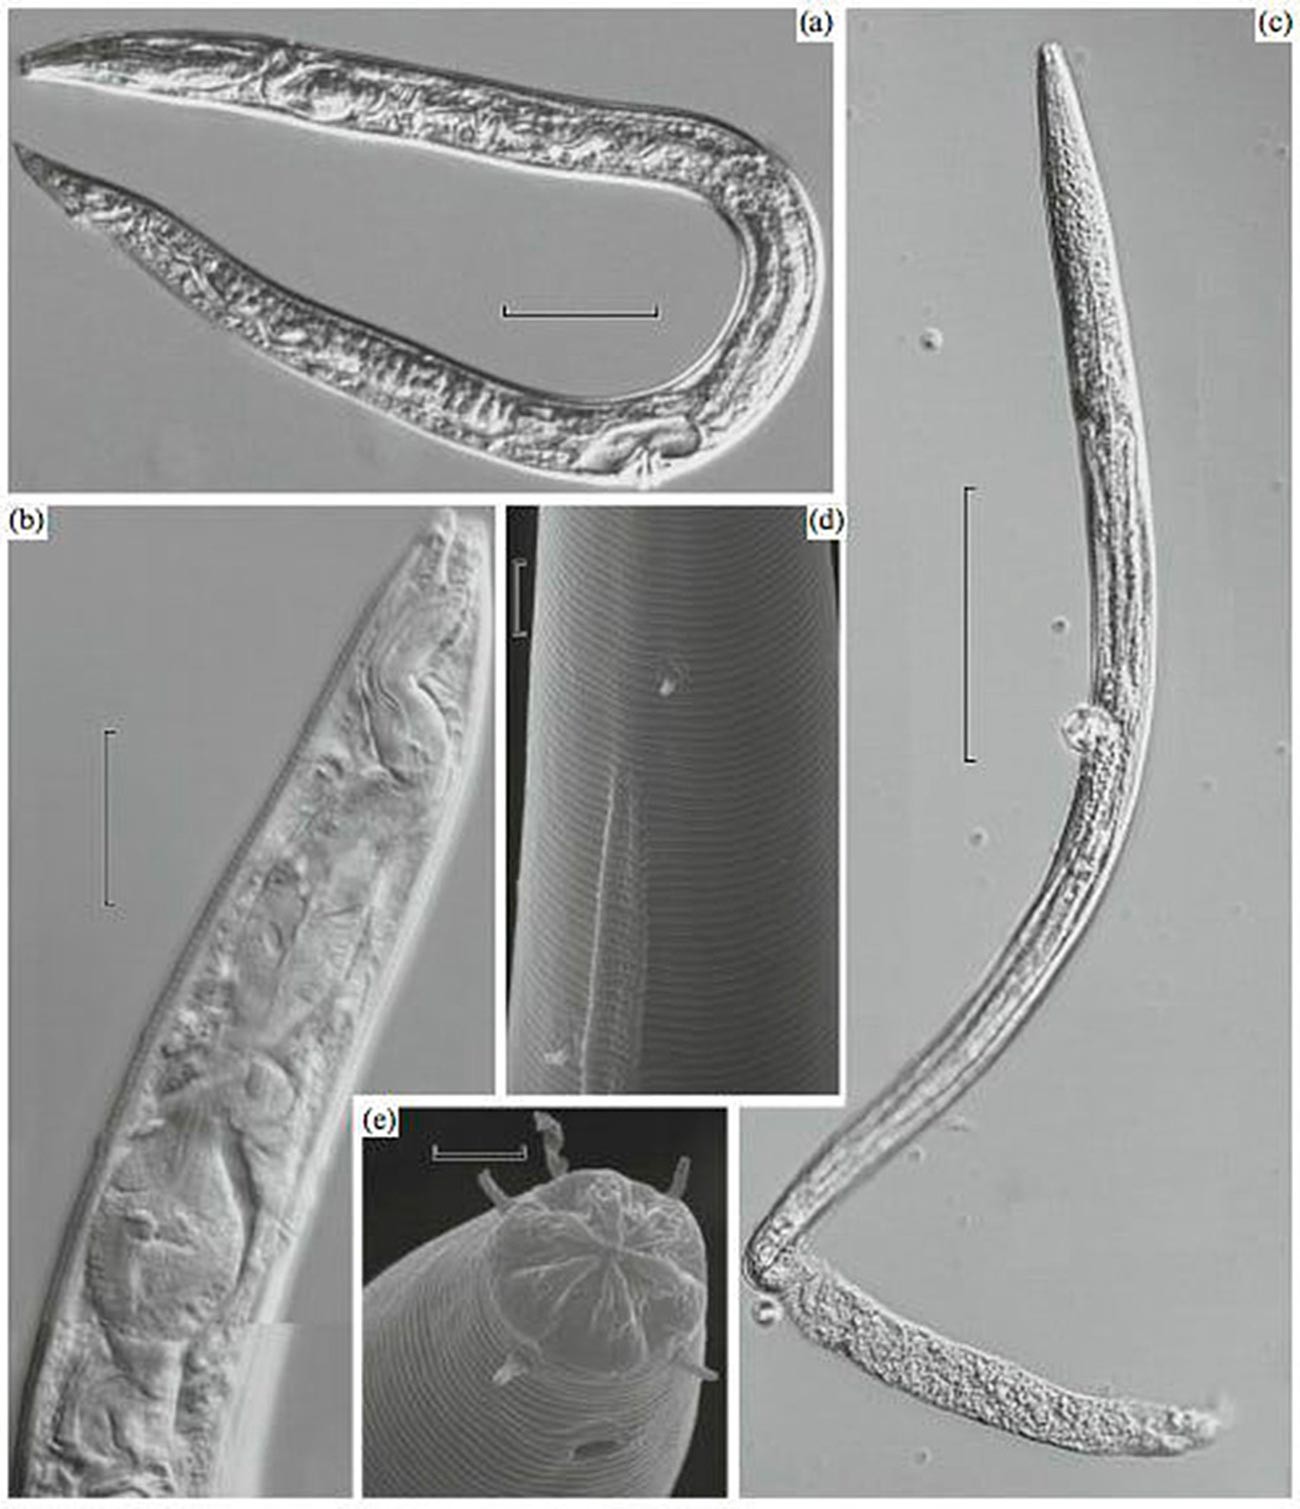 Nematode roundworms